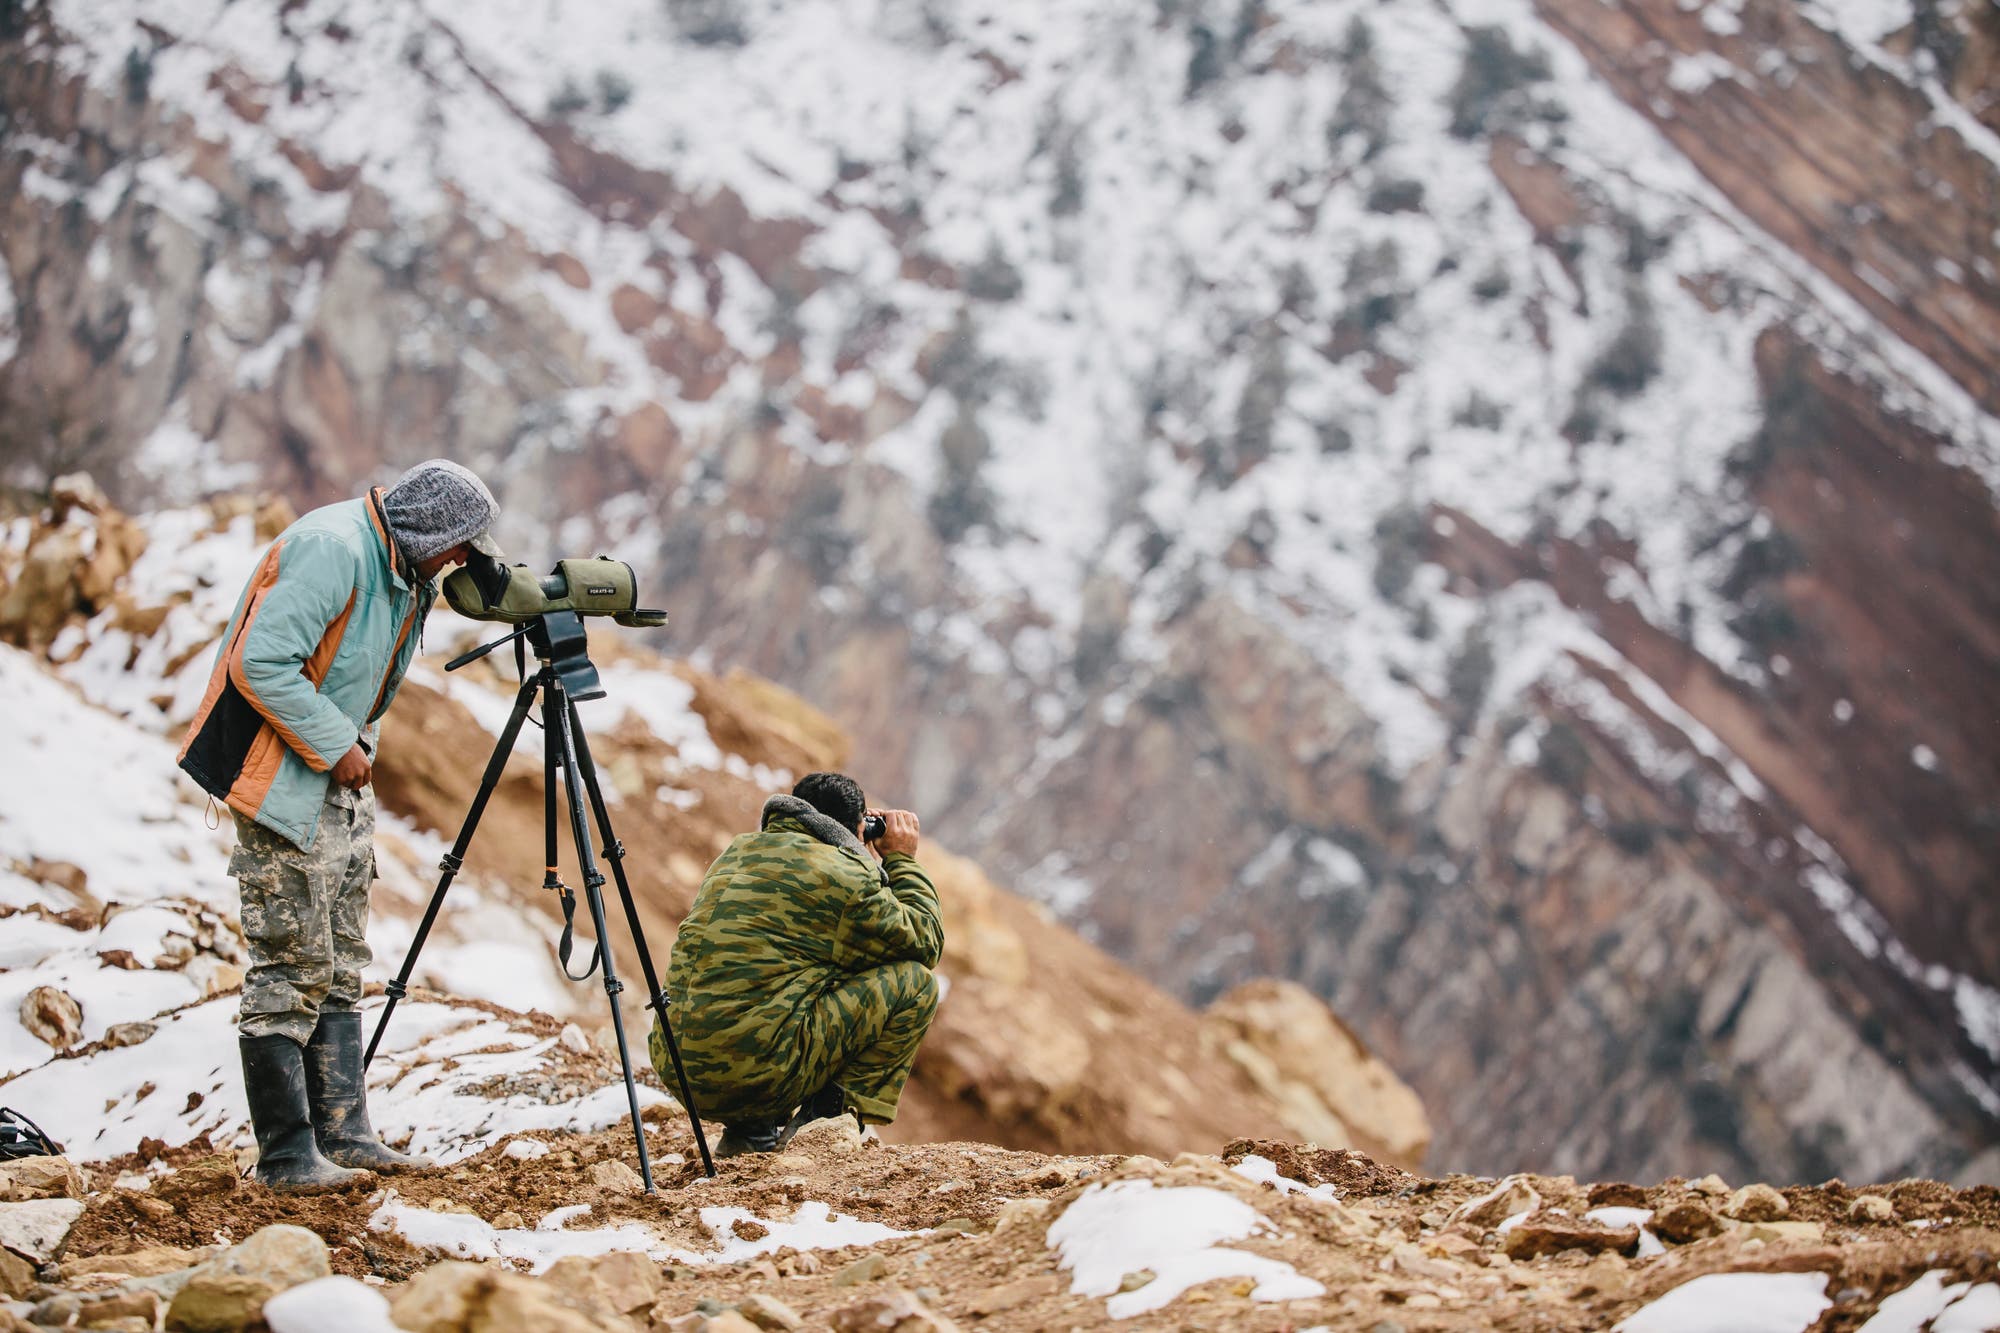 Zwei tadschikische Ranger suchen in einem der Jagdgebiete nach den Markhors, die gerne durch steile Felshänge steigen.